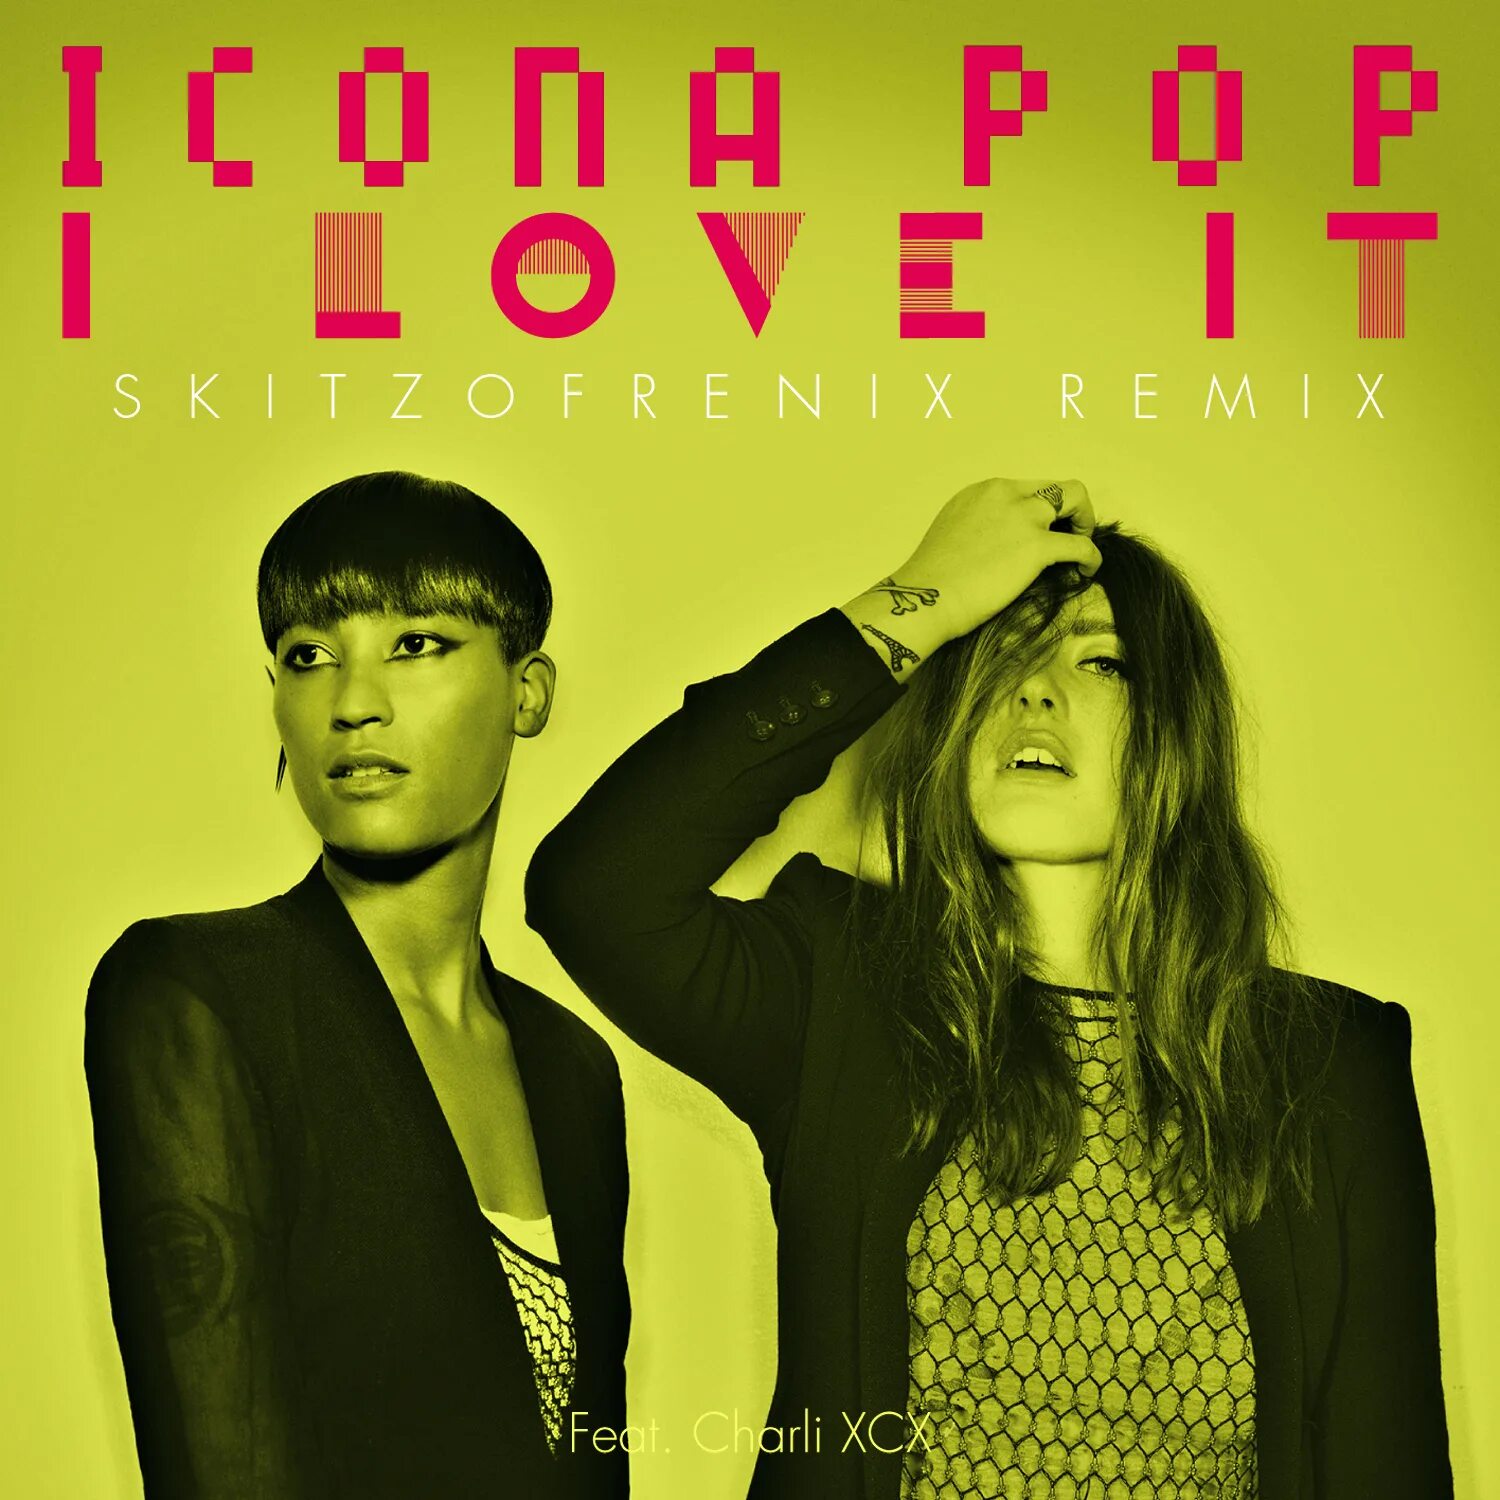 I Love it icona Pop обложка. Icona Pop feat. Charli XCX - I Love it (feat. Charli XCX). Обложка Charli XCX, icona Pop - i Love it.